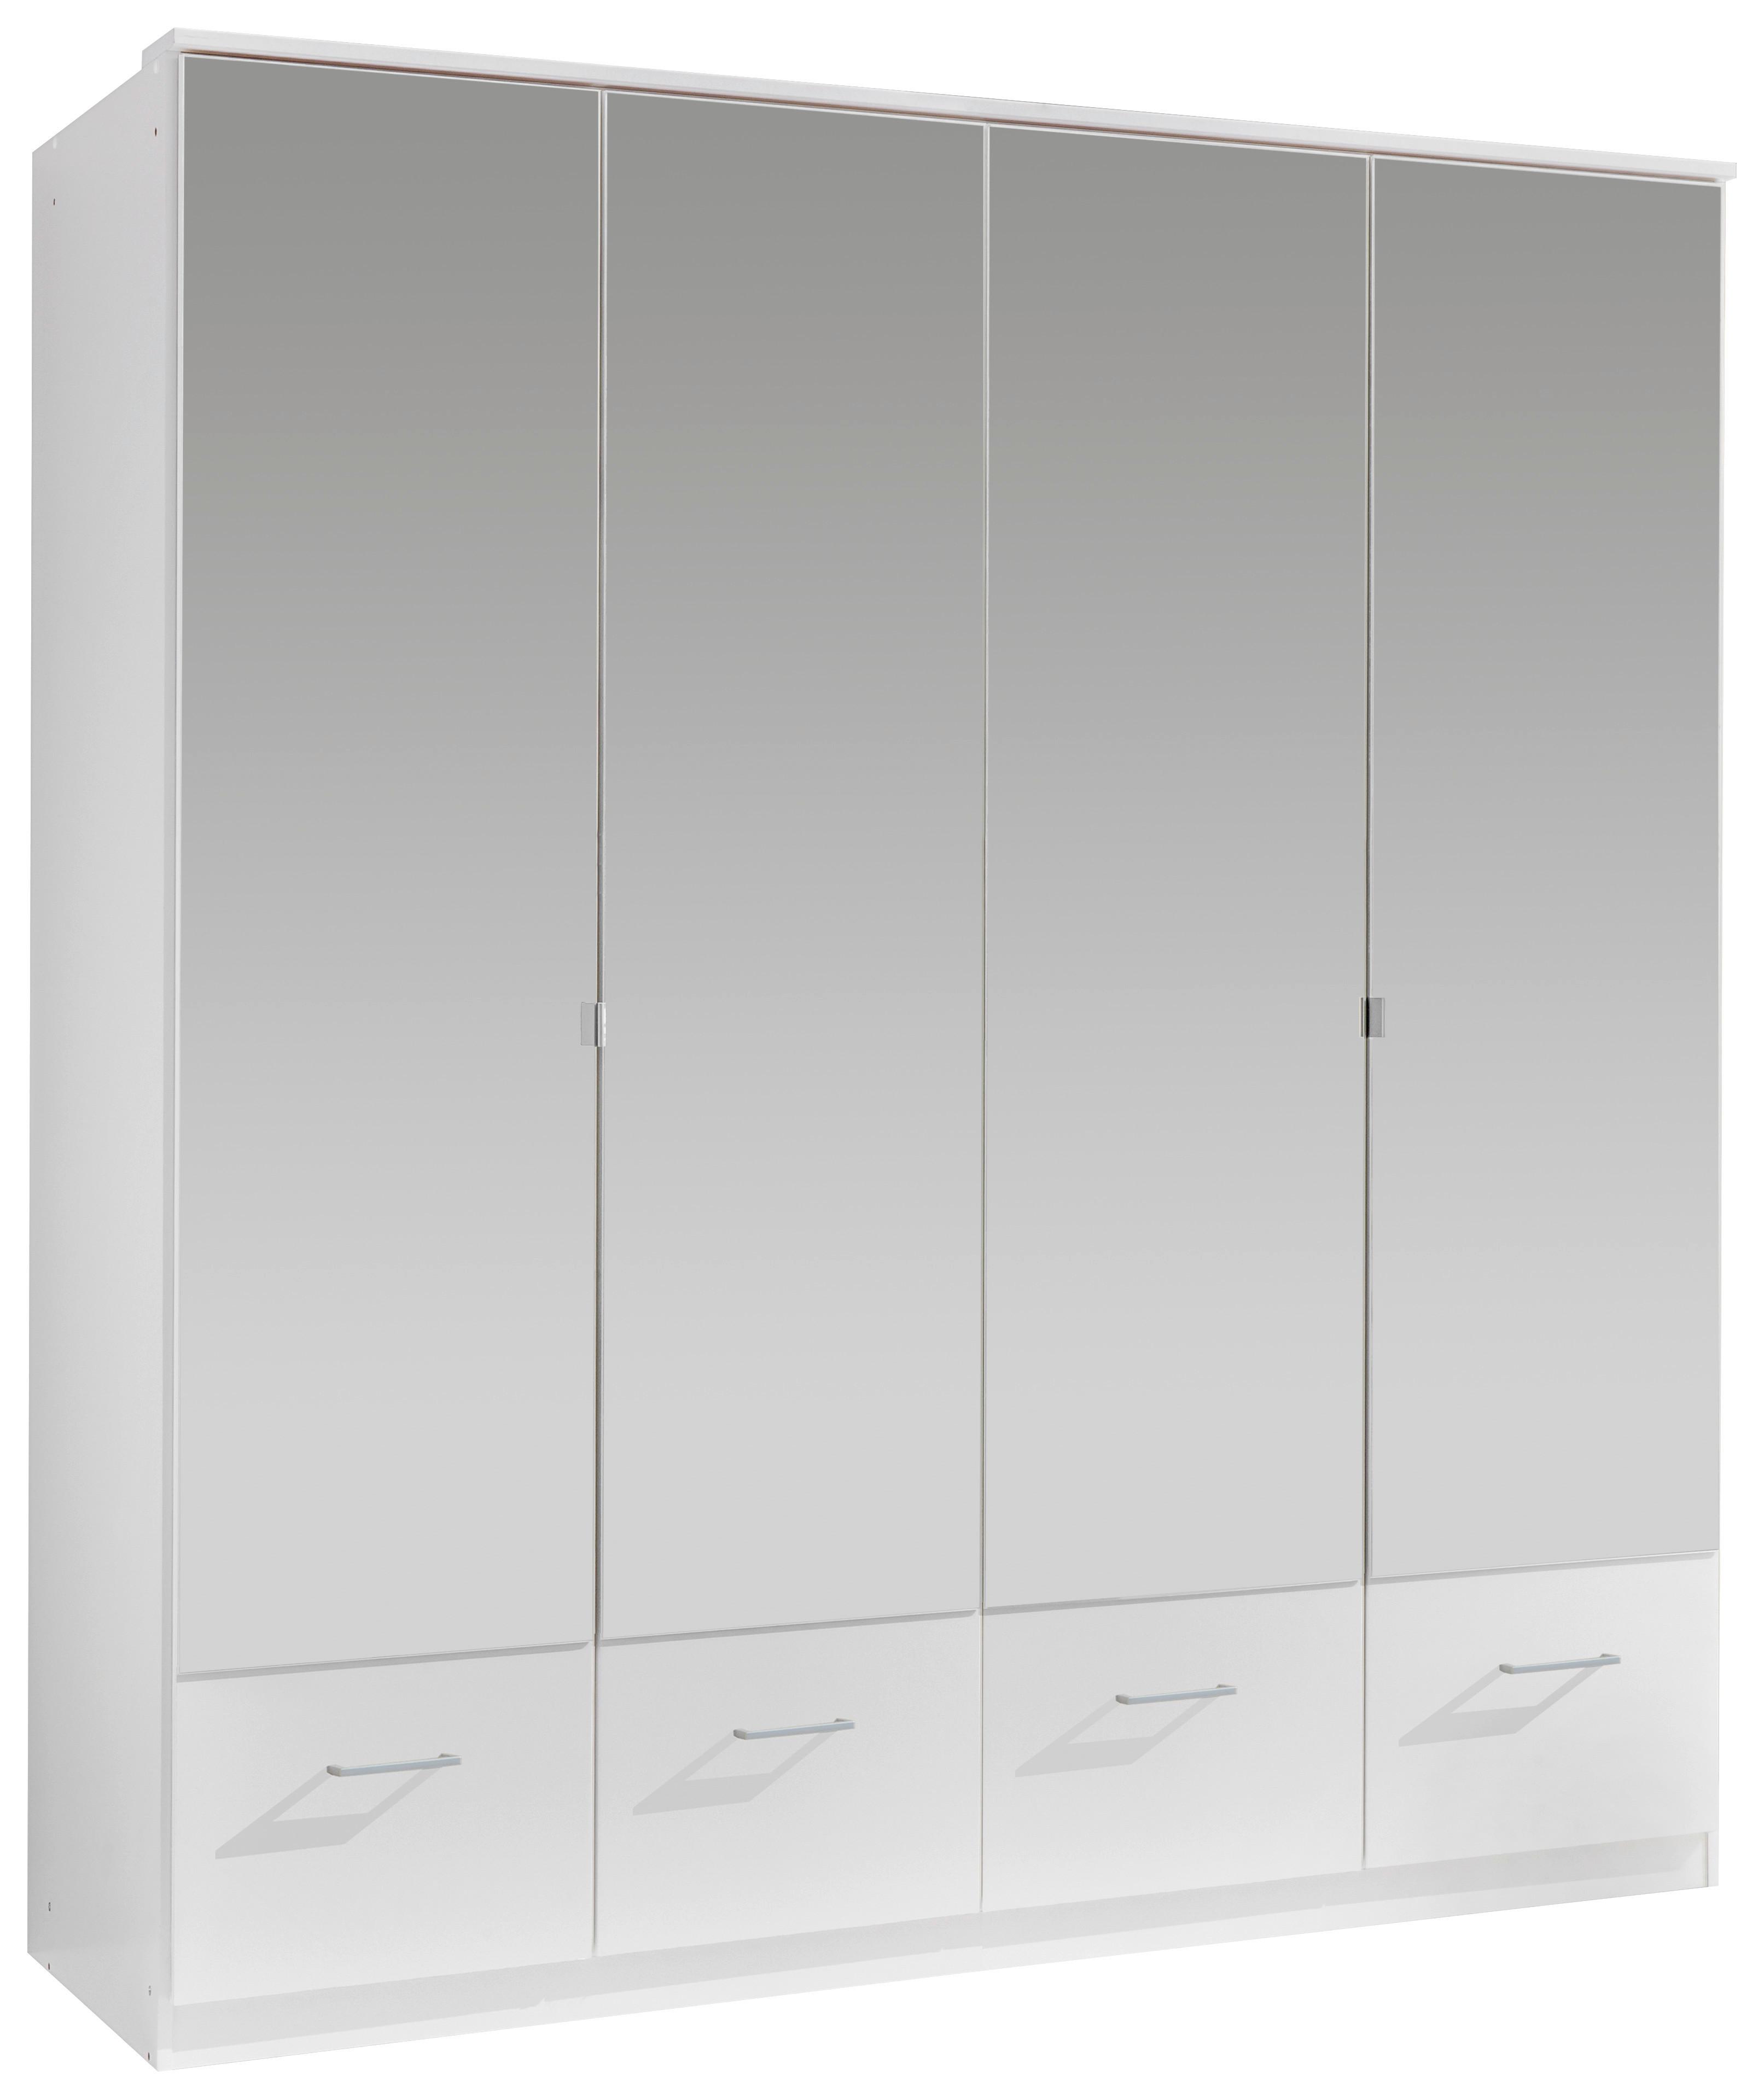 Drehtürenschrank mit Spiegel + Laden 180cm Imago, Weiß